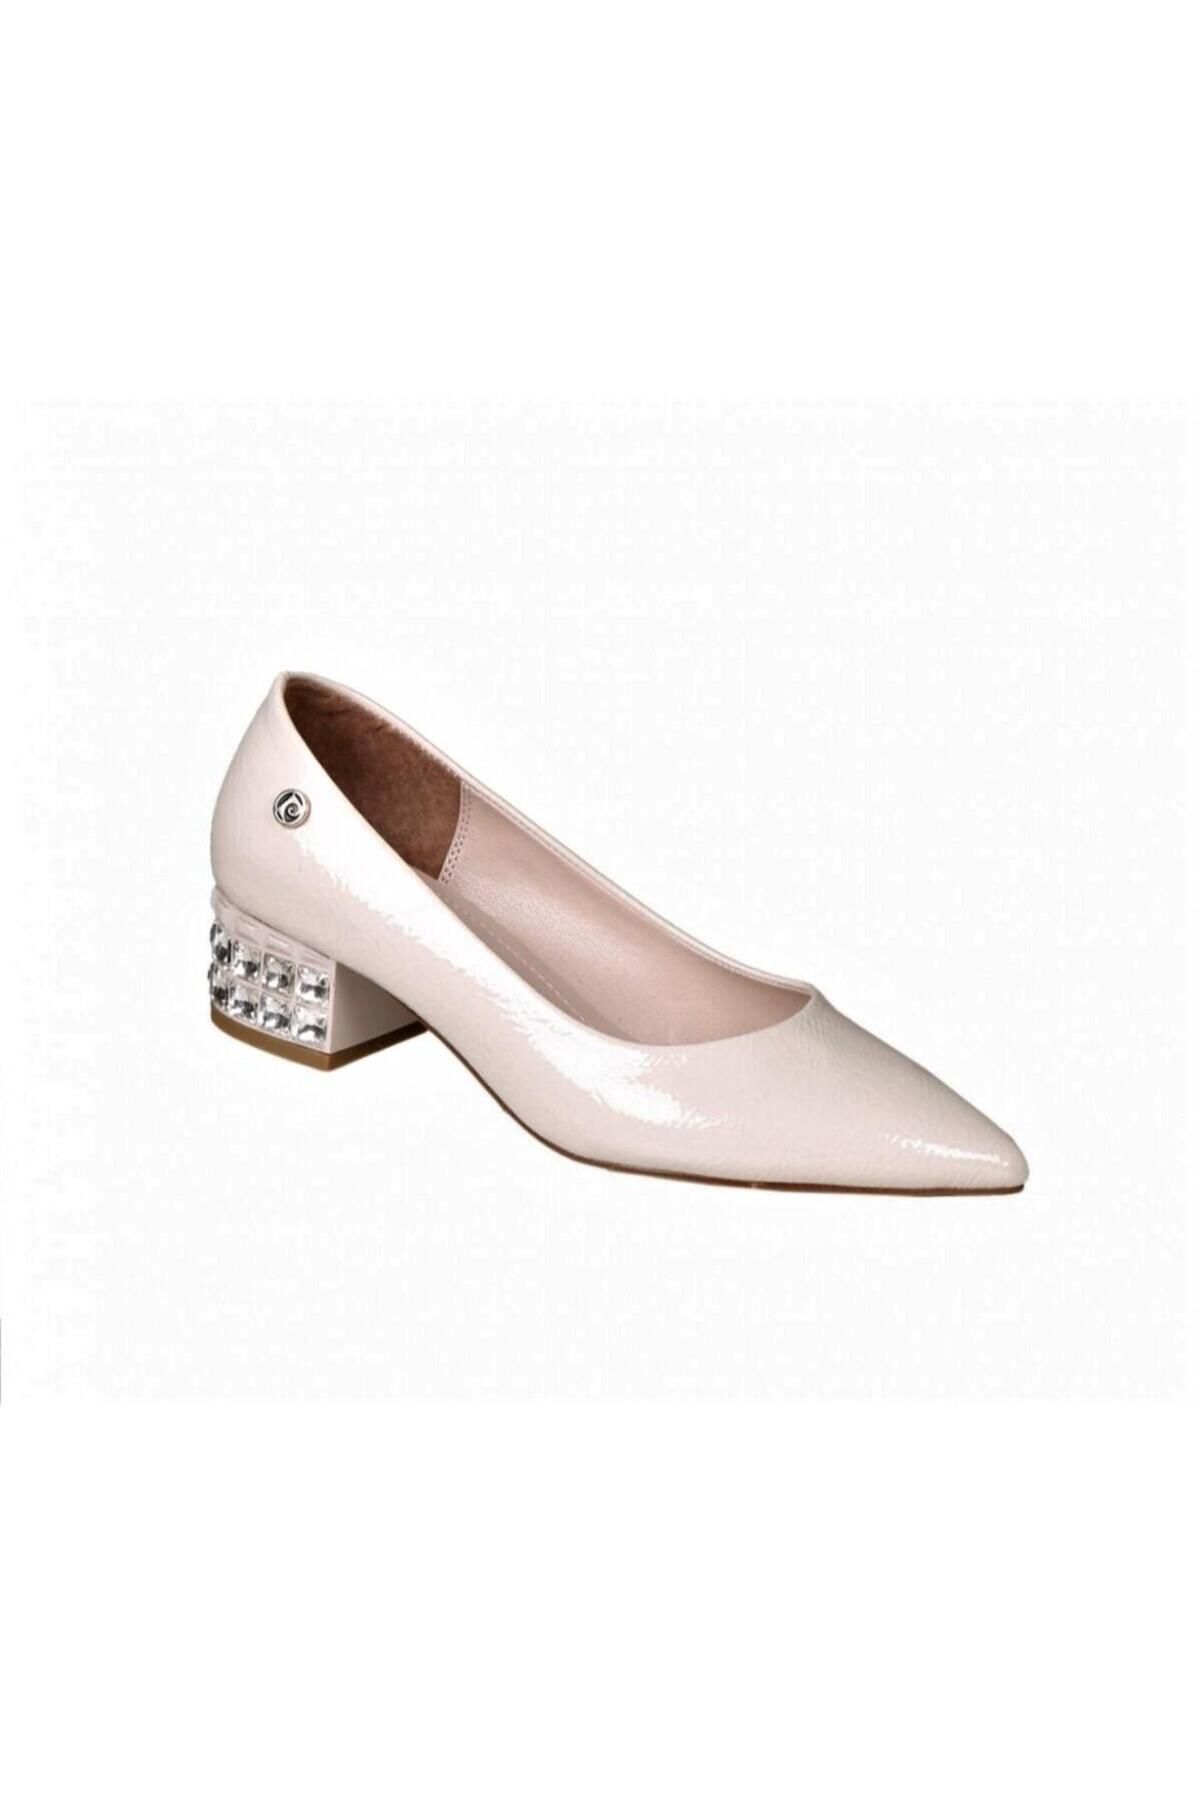 Pierre Cardin Pc51198 Kadın Taşlı Alçak Topuklu Busines Rugan Klasik Ayakkabı